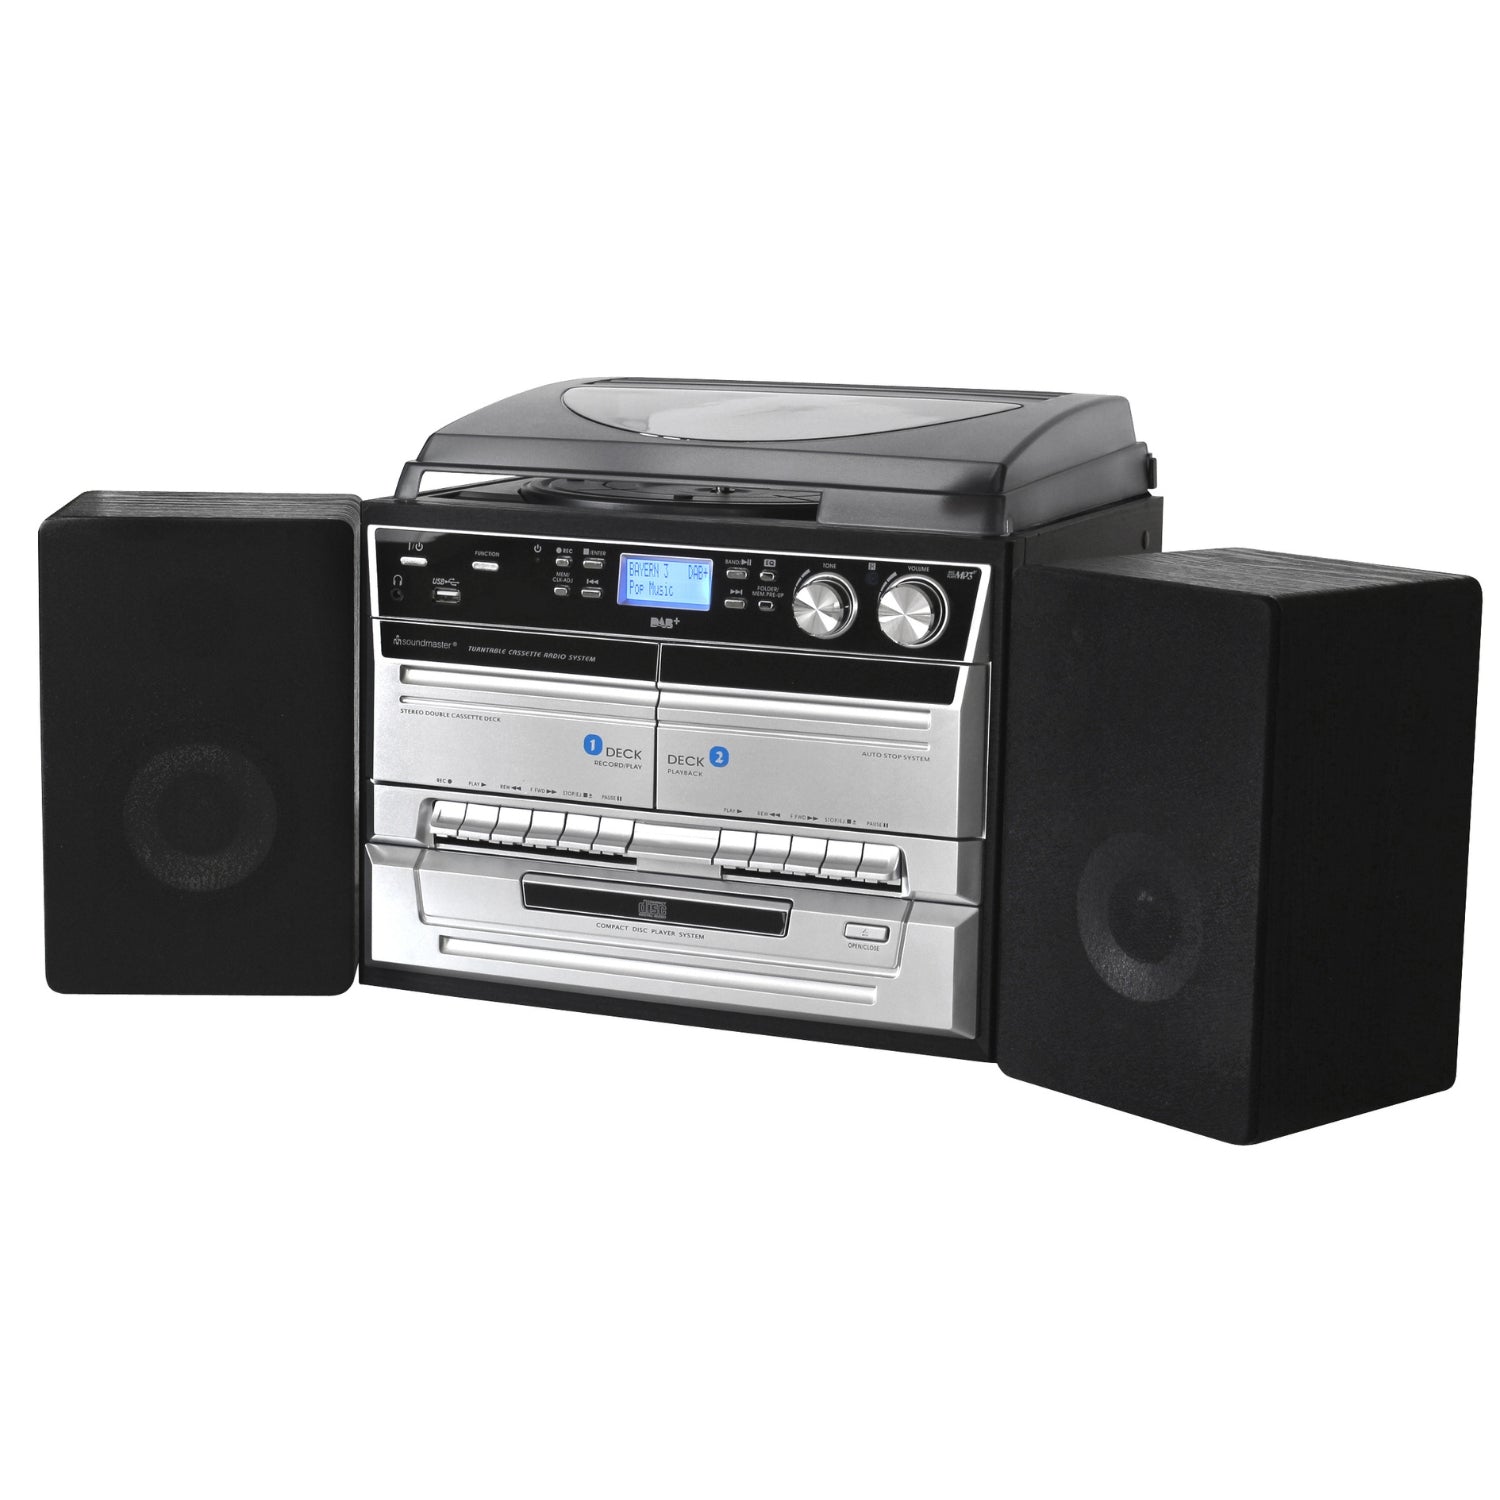 Soundmaster MCD5550SW système stéréo DAB + double cassette Bluetooth CD MP3 platine vinyle encodage USB numérisation